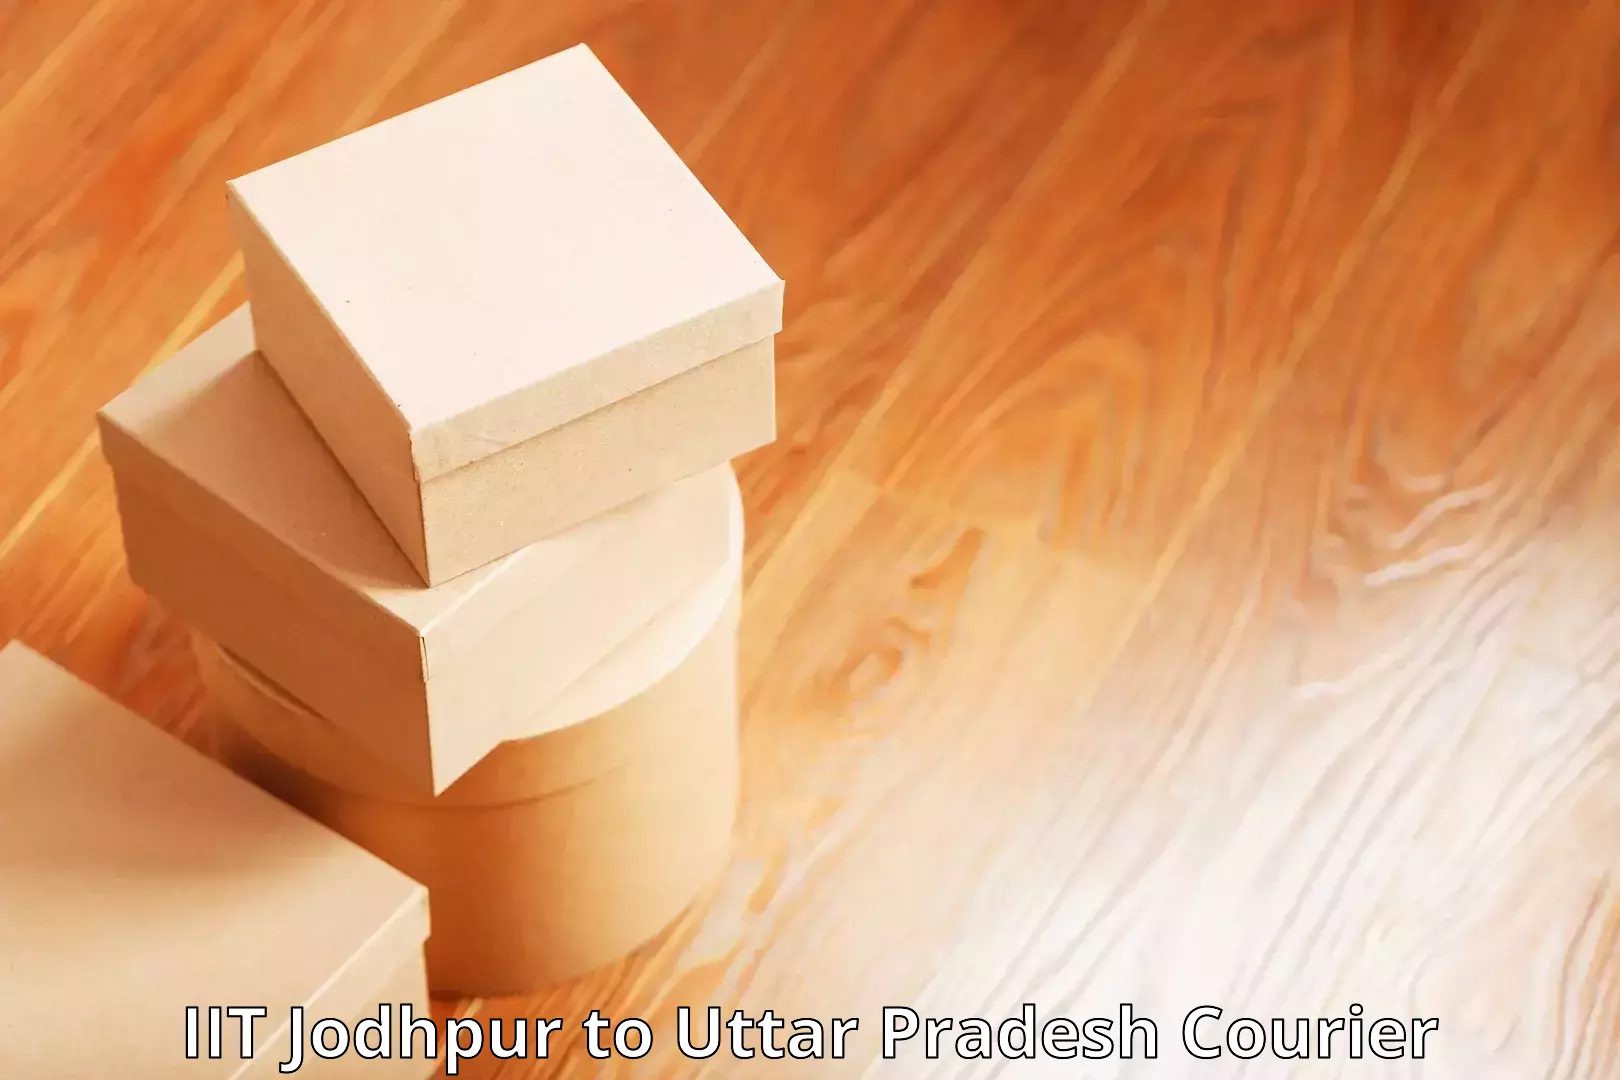 Rapid freight solutions IIT Jodhpur to Uttar Pradesh